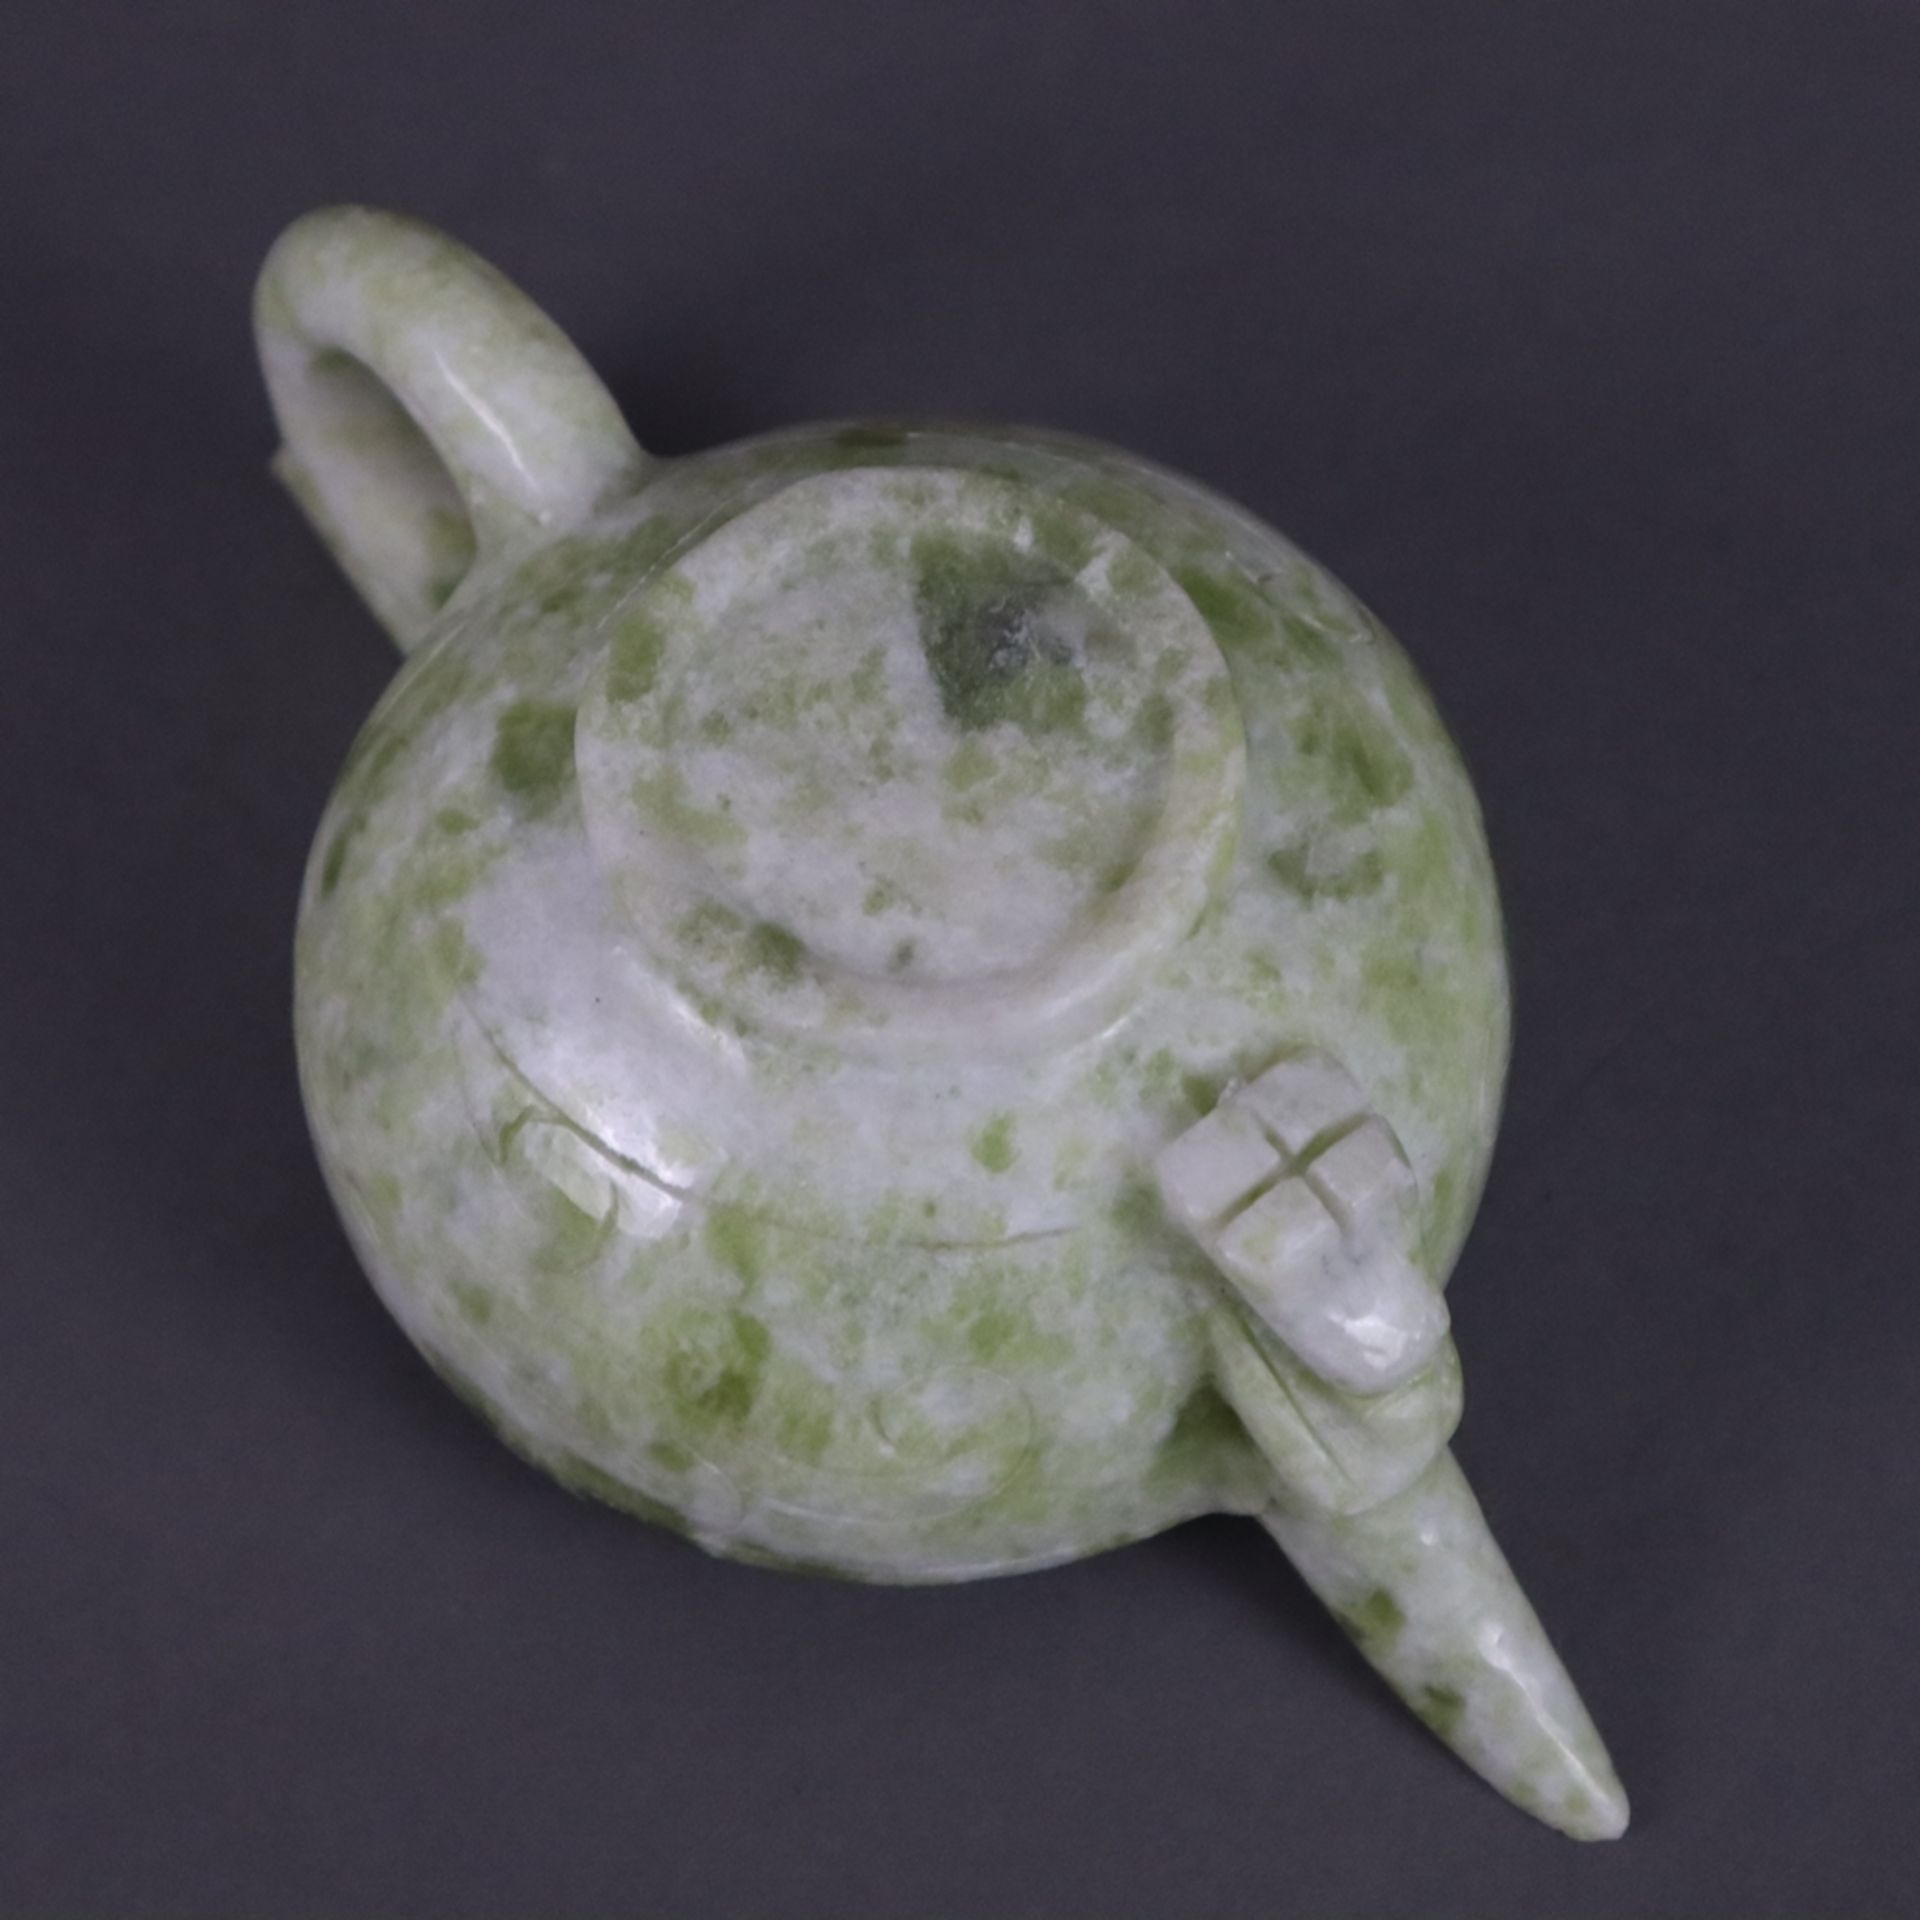 Zierkanne aus Jade - China, Schnitzarbeit aus heller grünlich marmorierter Jade, der Henkel ist ver - Bild 8 aus 8